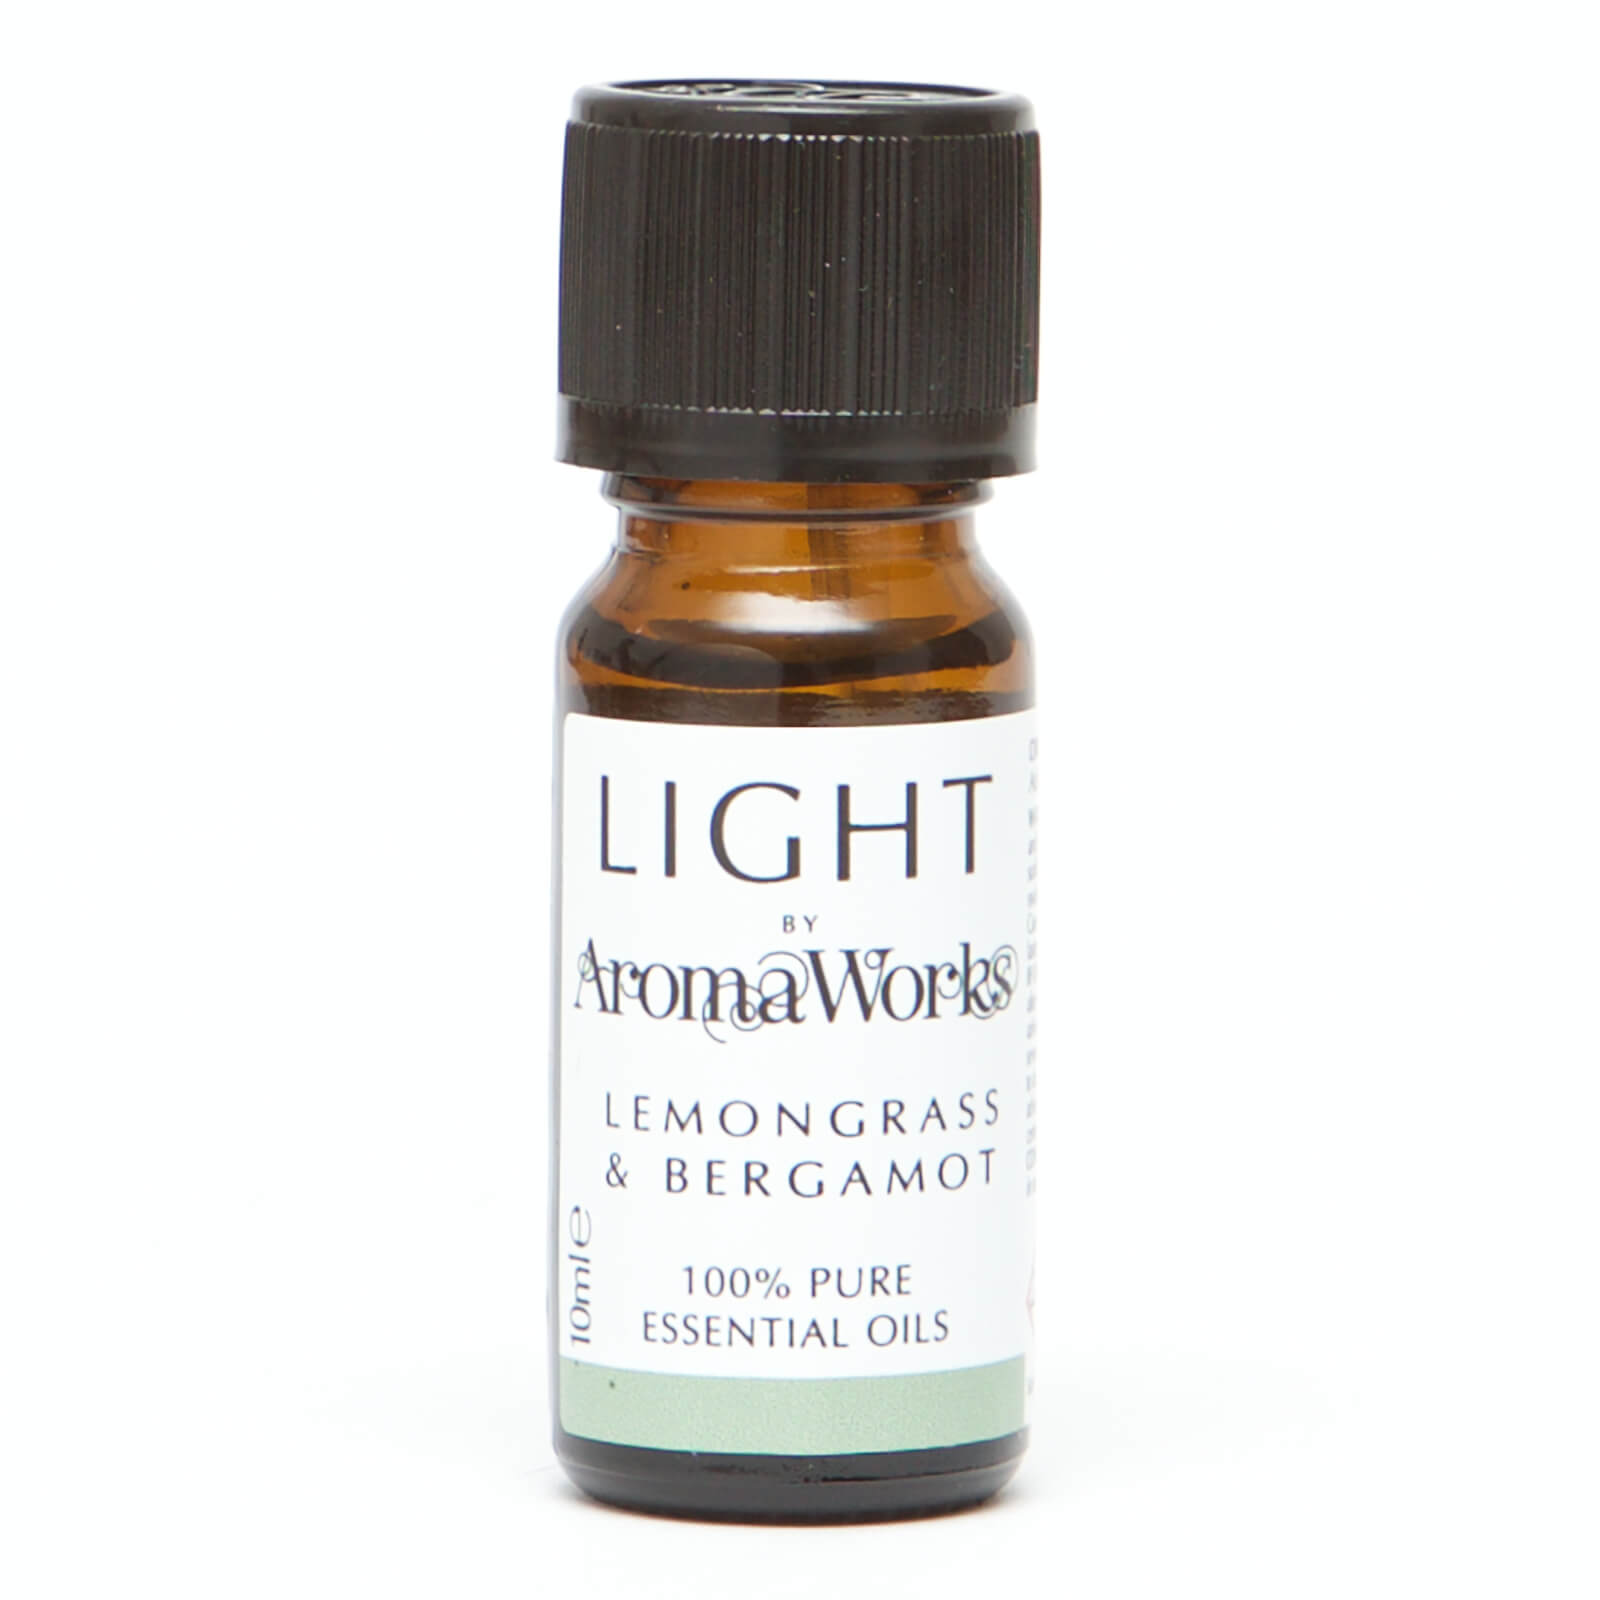 AromaWorks Light Range - Lemongrass and Bergamot 10ml Essential Oil